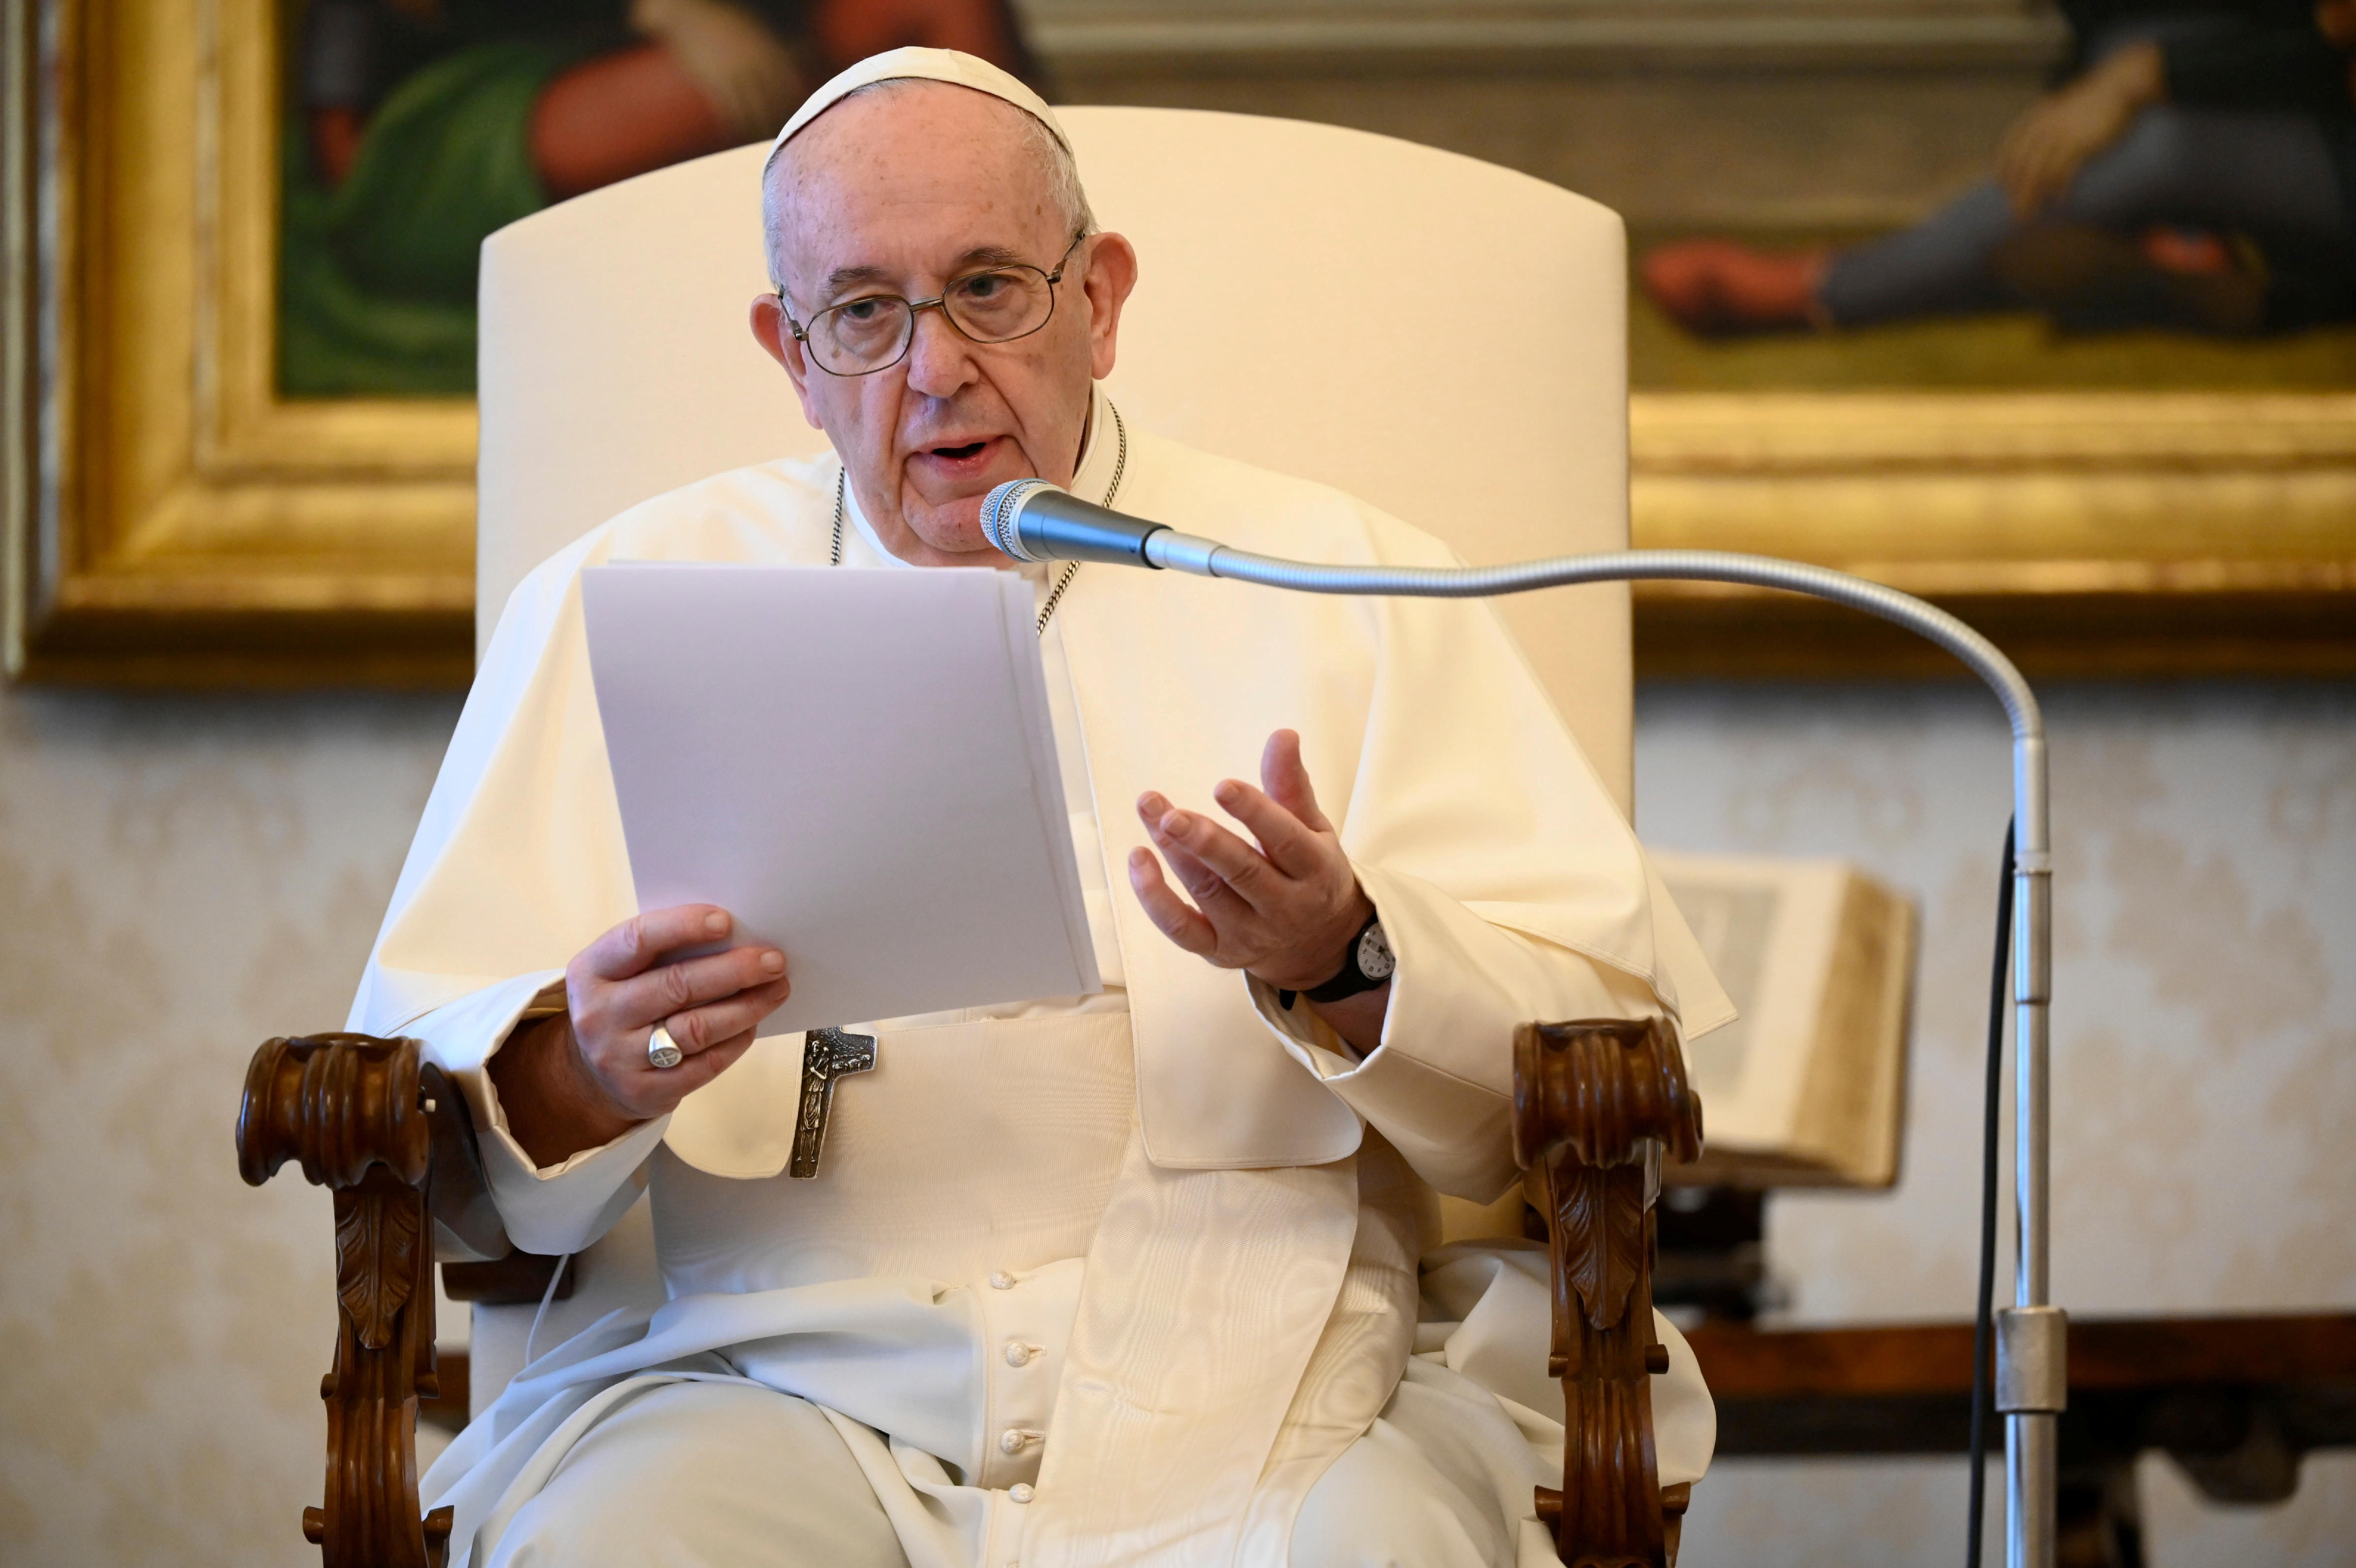 El papa Francisco advirtió sobre las “patologías sociales” de la pandemia y urge a colaborar